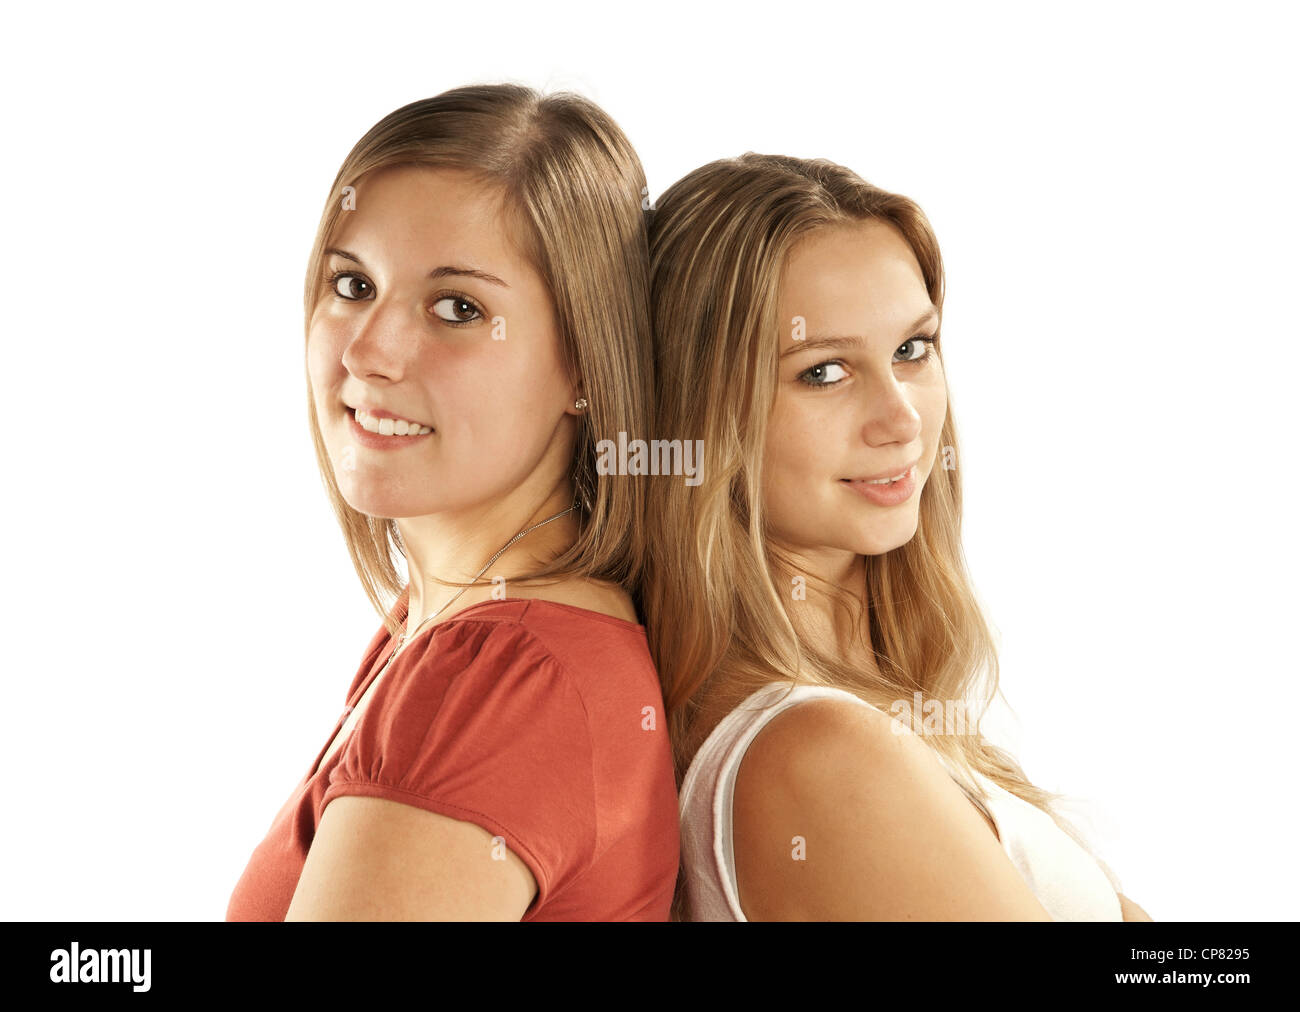 Dos bonitas mujeres jóvenes recostado de espaldas unos a otros. Foto de stock